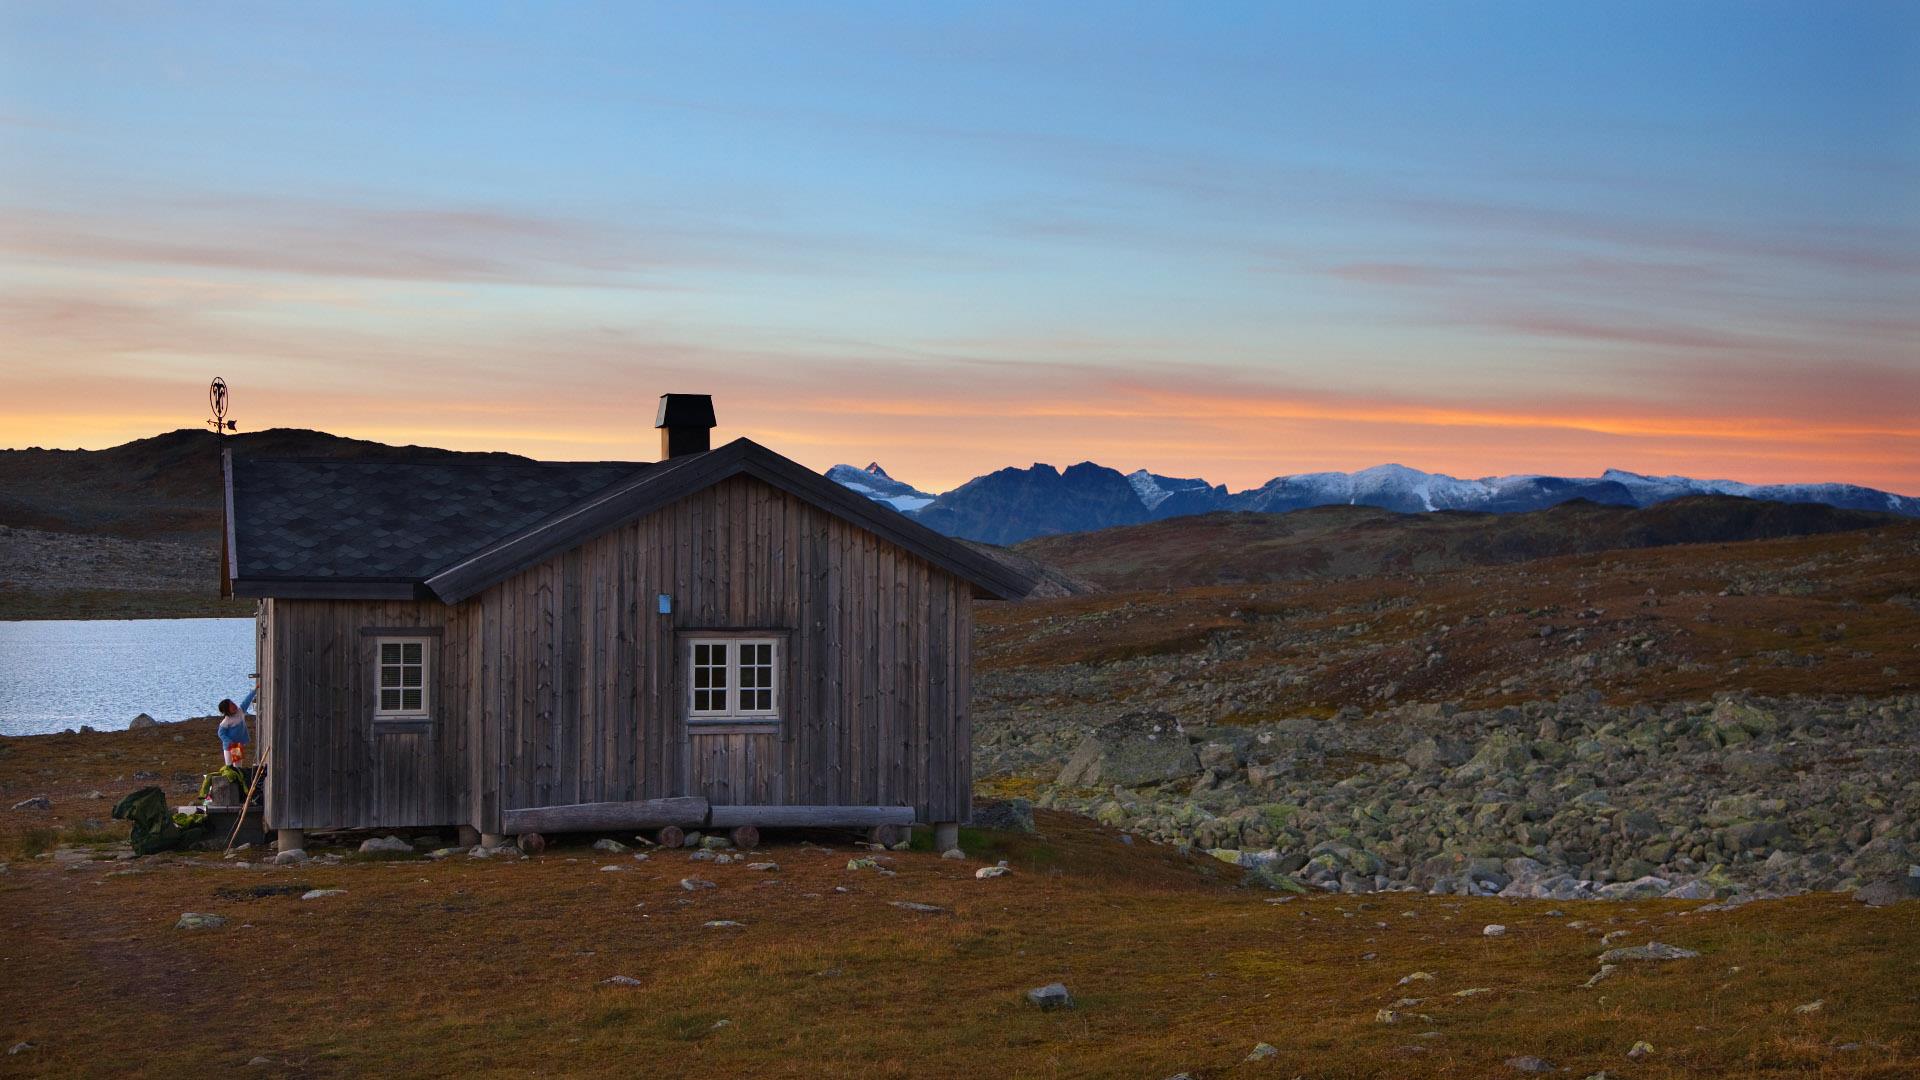 En hytte ligger ved et vann på fjellet. Solnedgangen farger himmelen over fjellrekka i horisonten oransjerød.